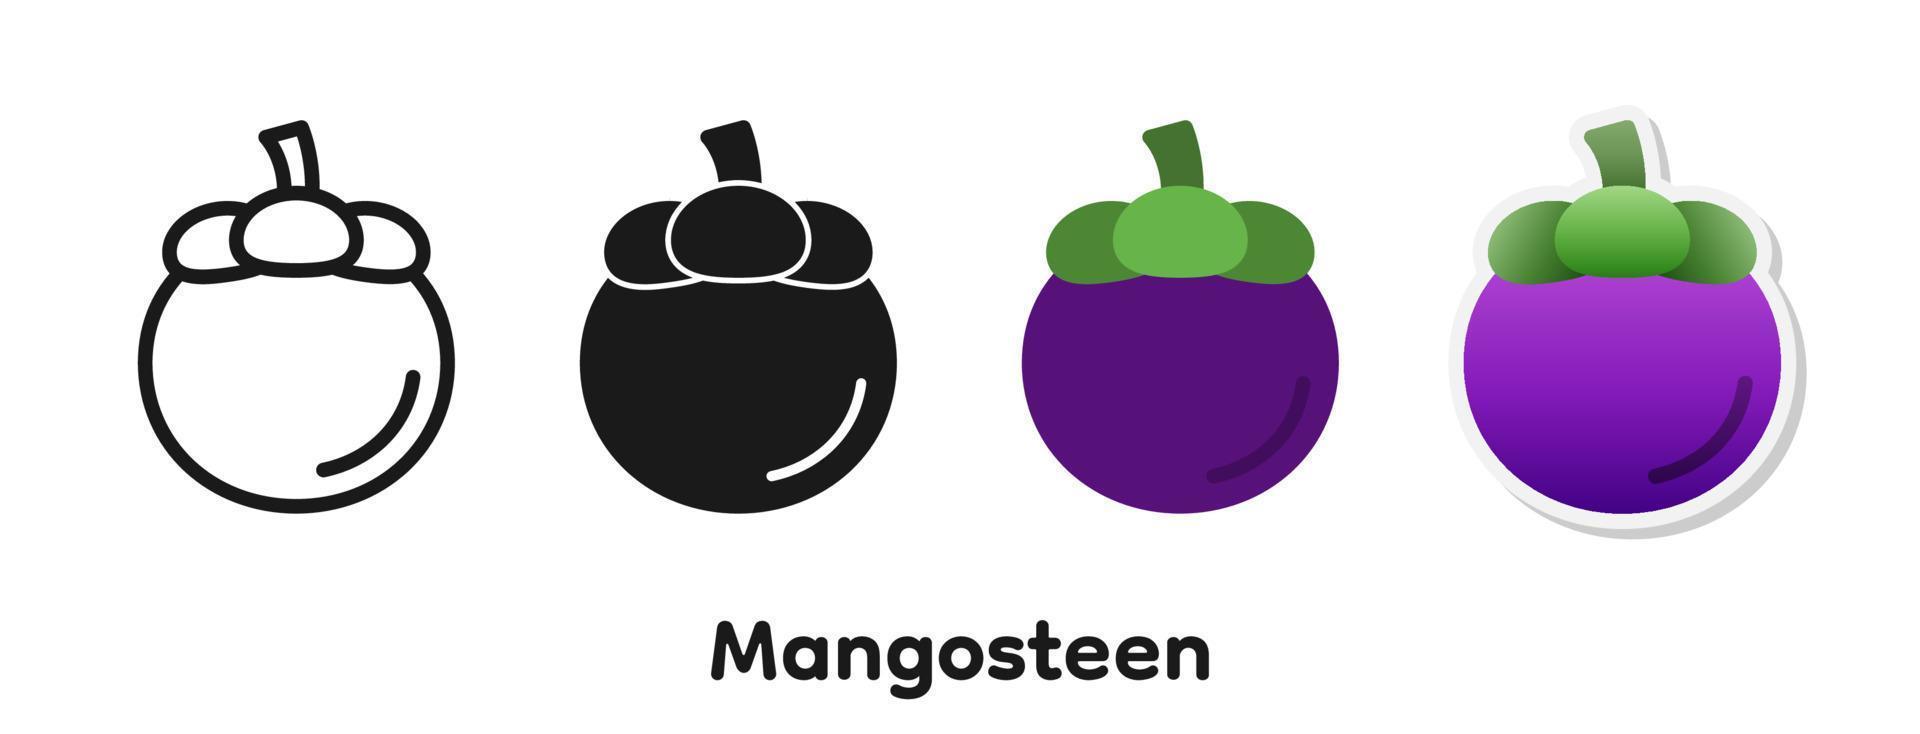 jeu d'icônes vectorielles du mangoustan. vecteur